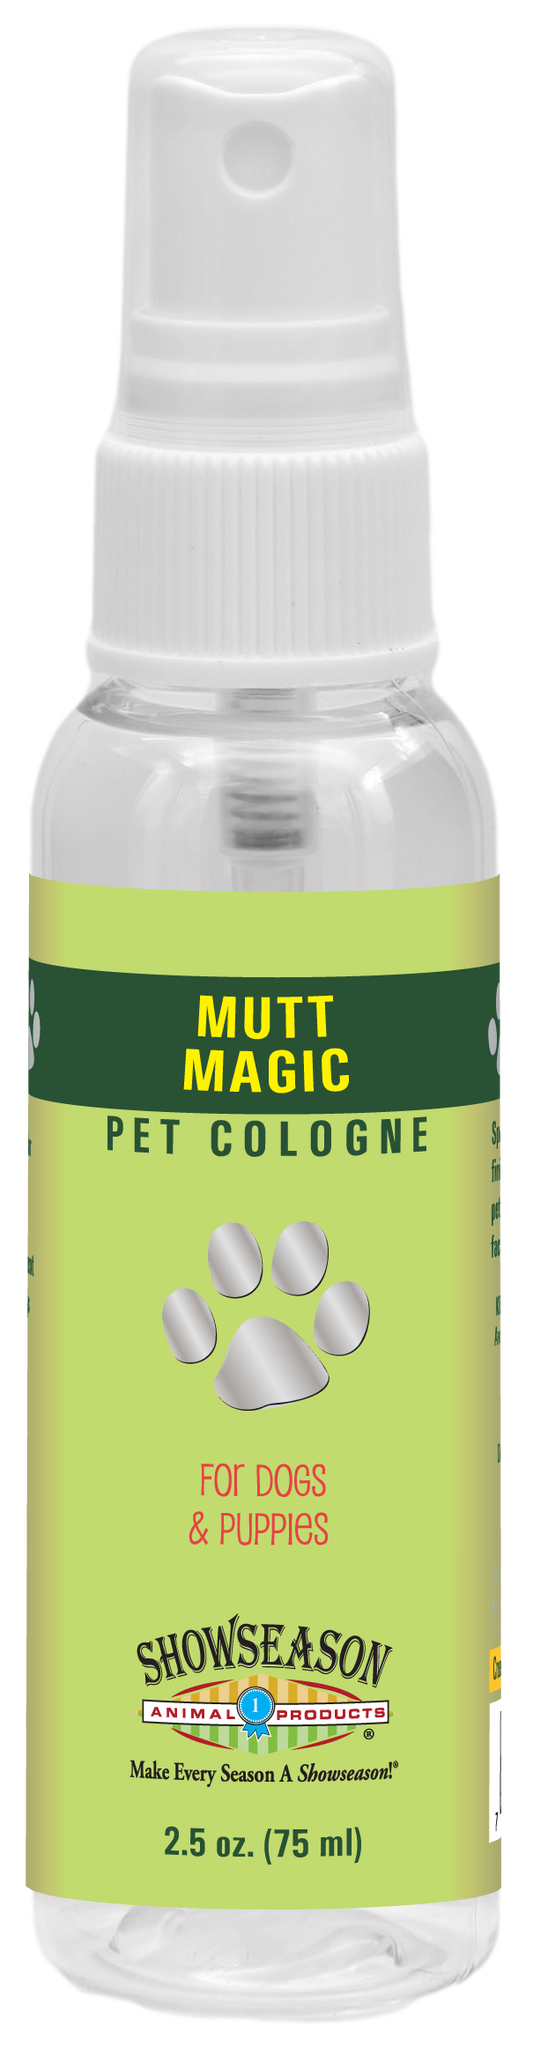 Mutt Magic Pet Cologne | Showseason®